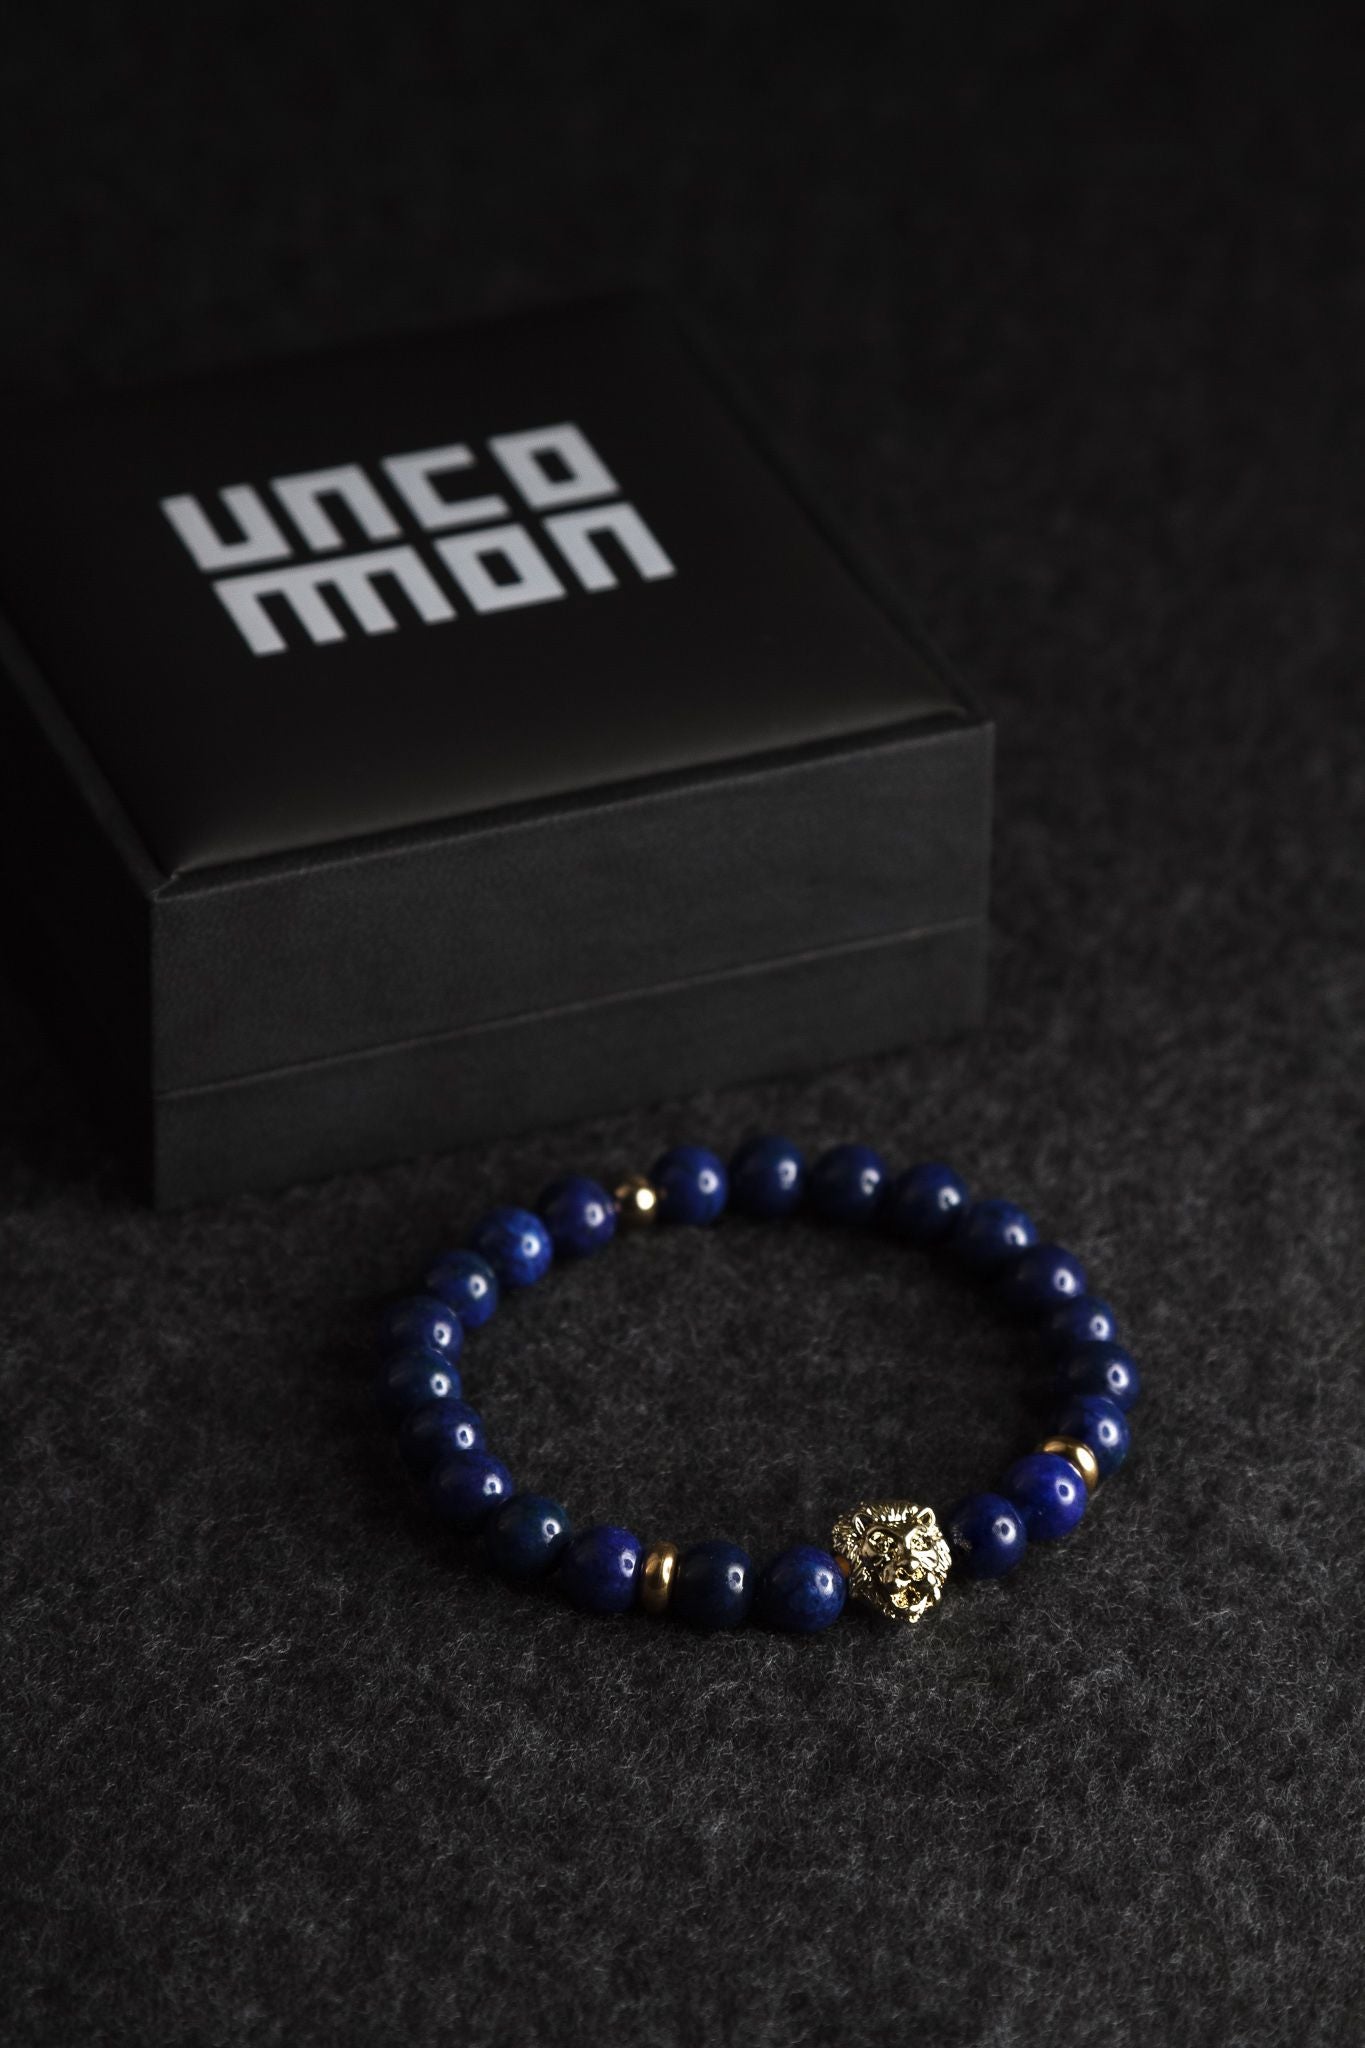 UNCOMMON Men's Beads Bracelet One Gold Lion Charm Blue Jasper Beads